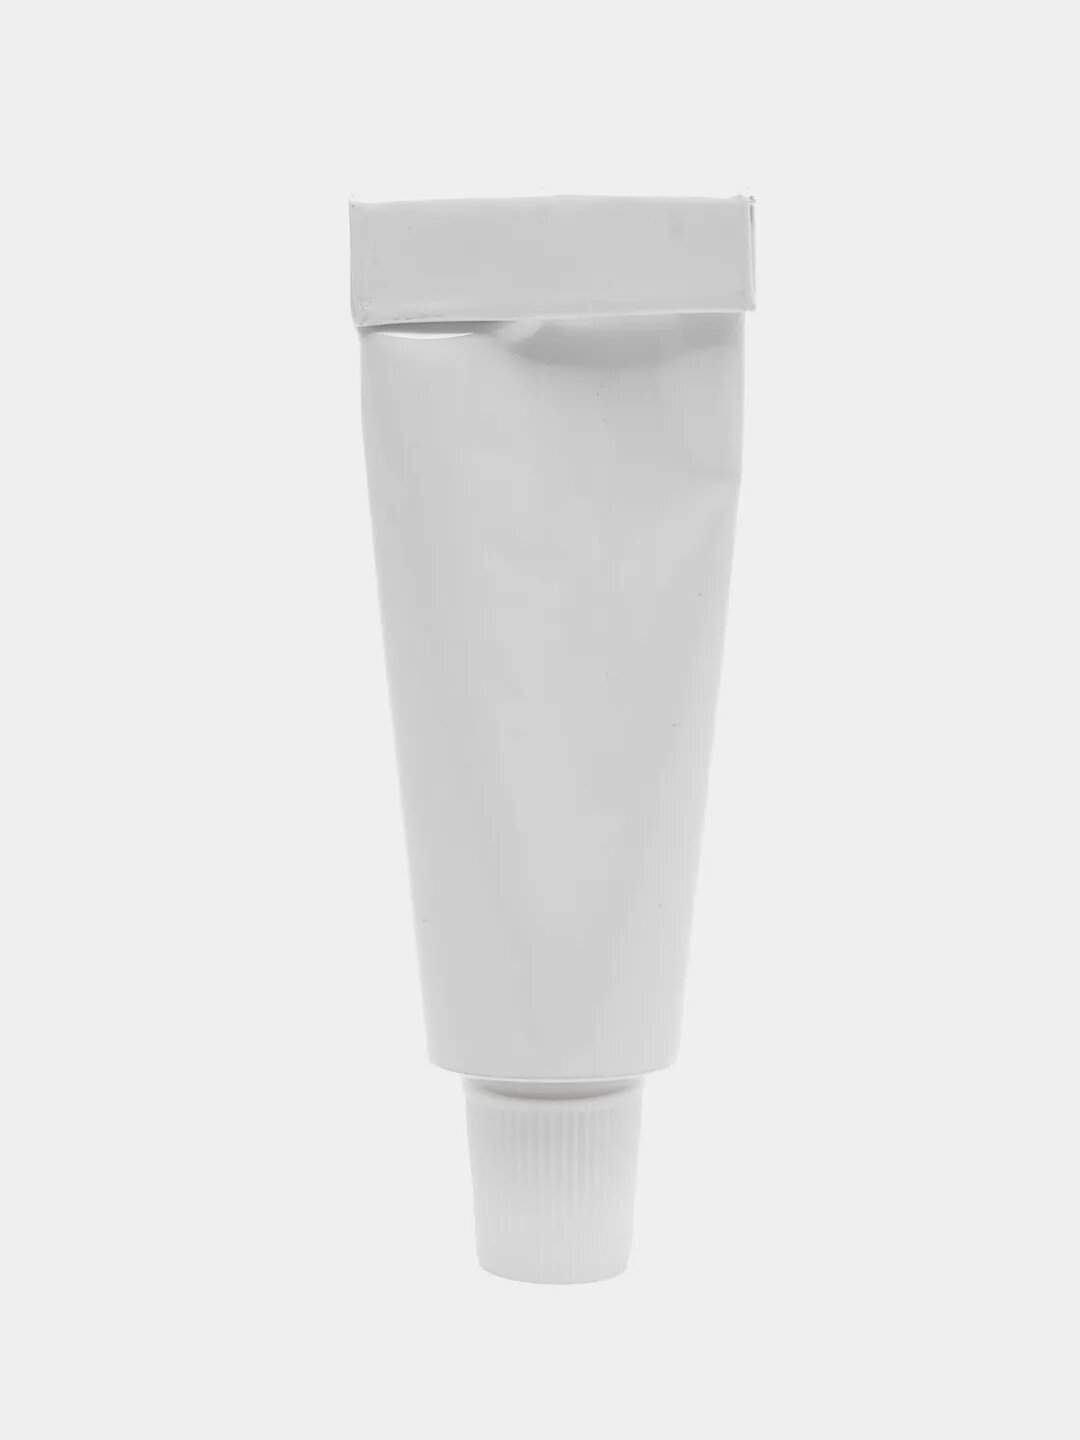 Термоклей, теплопроводный клей (Silicone Heatsink Plaster) YNPJ-922, 5 гр